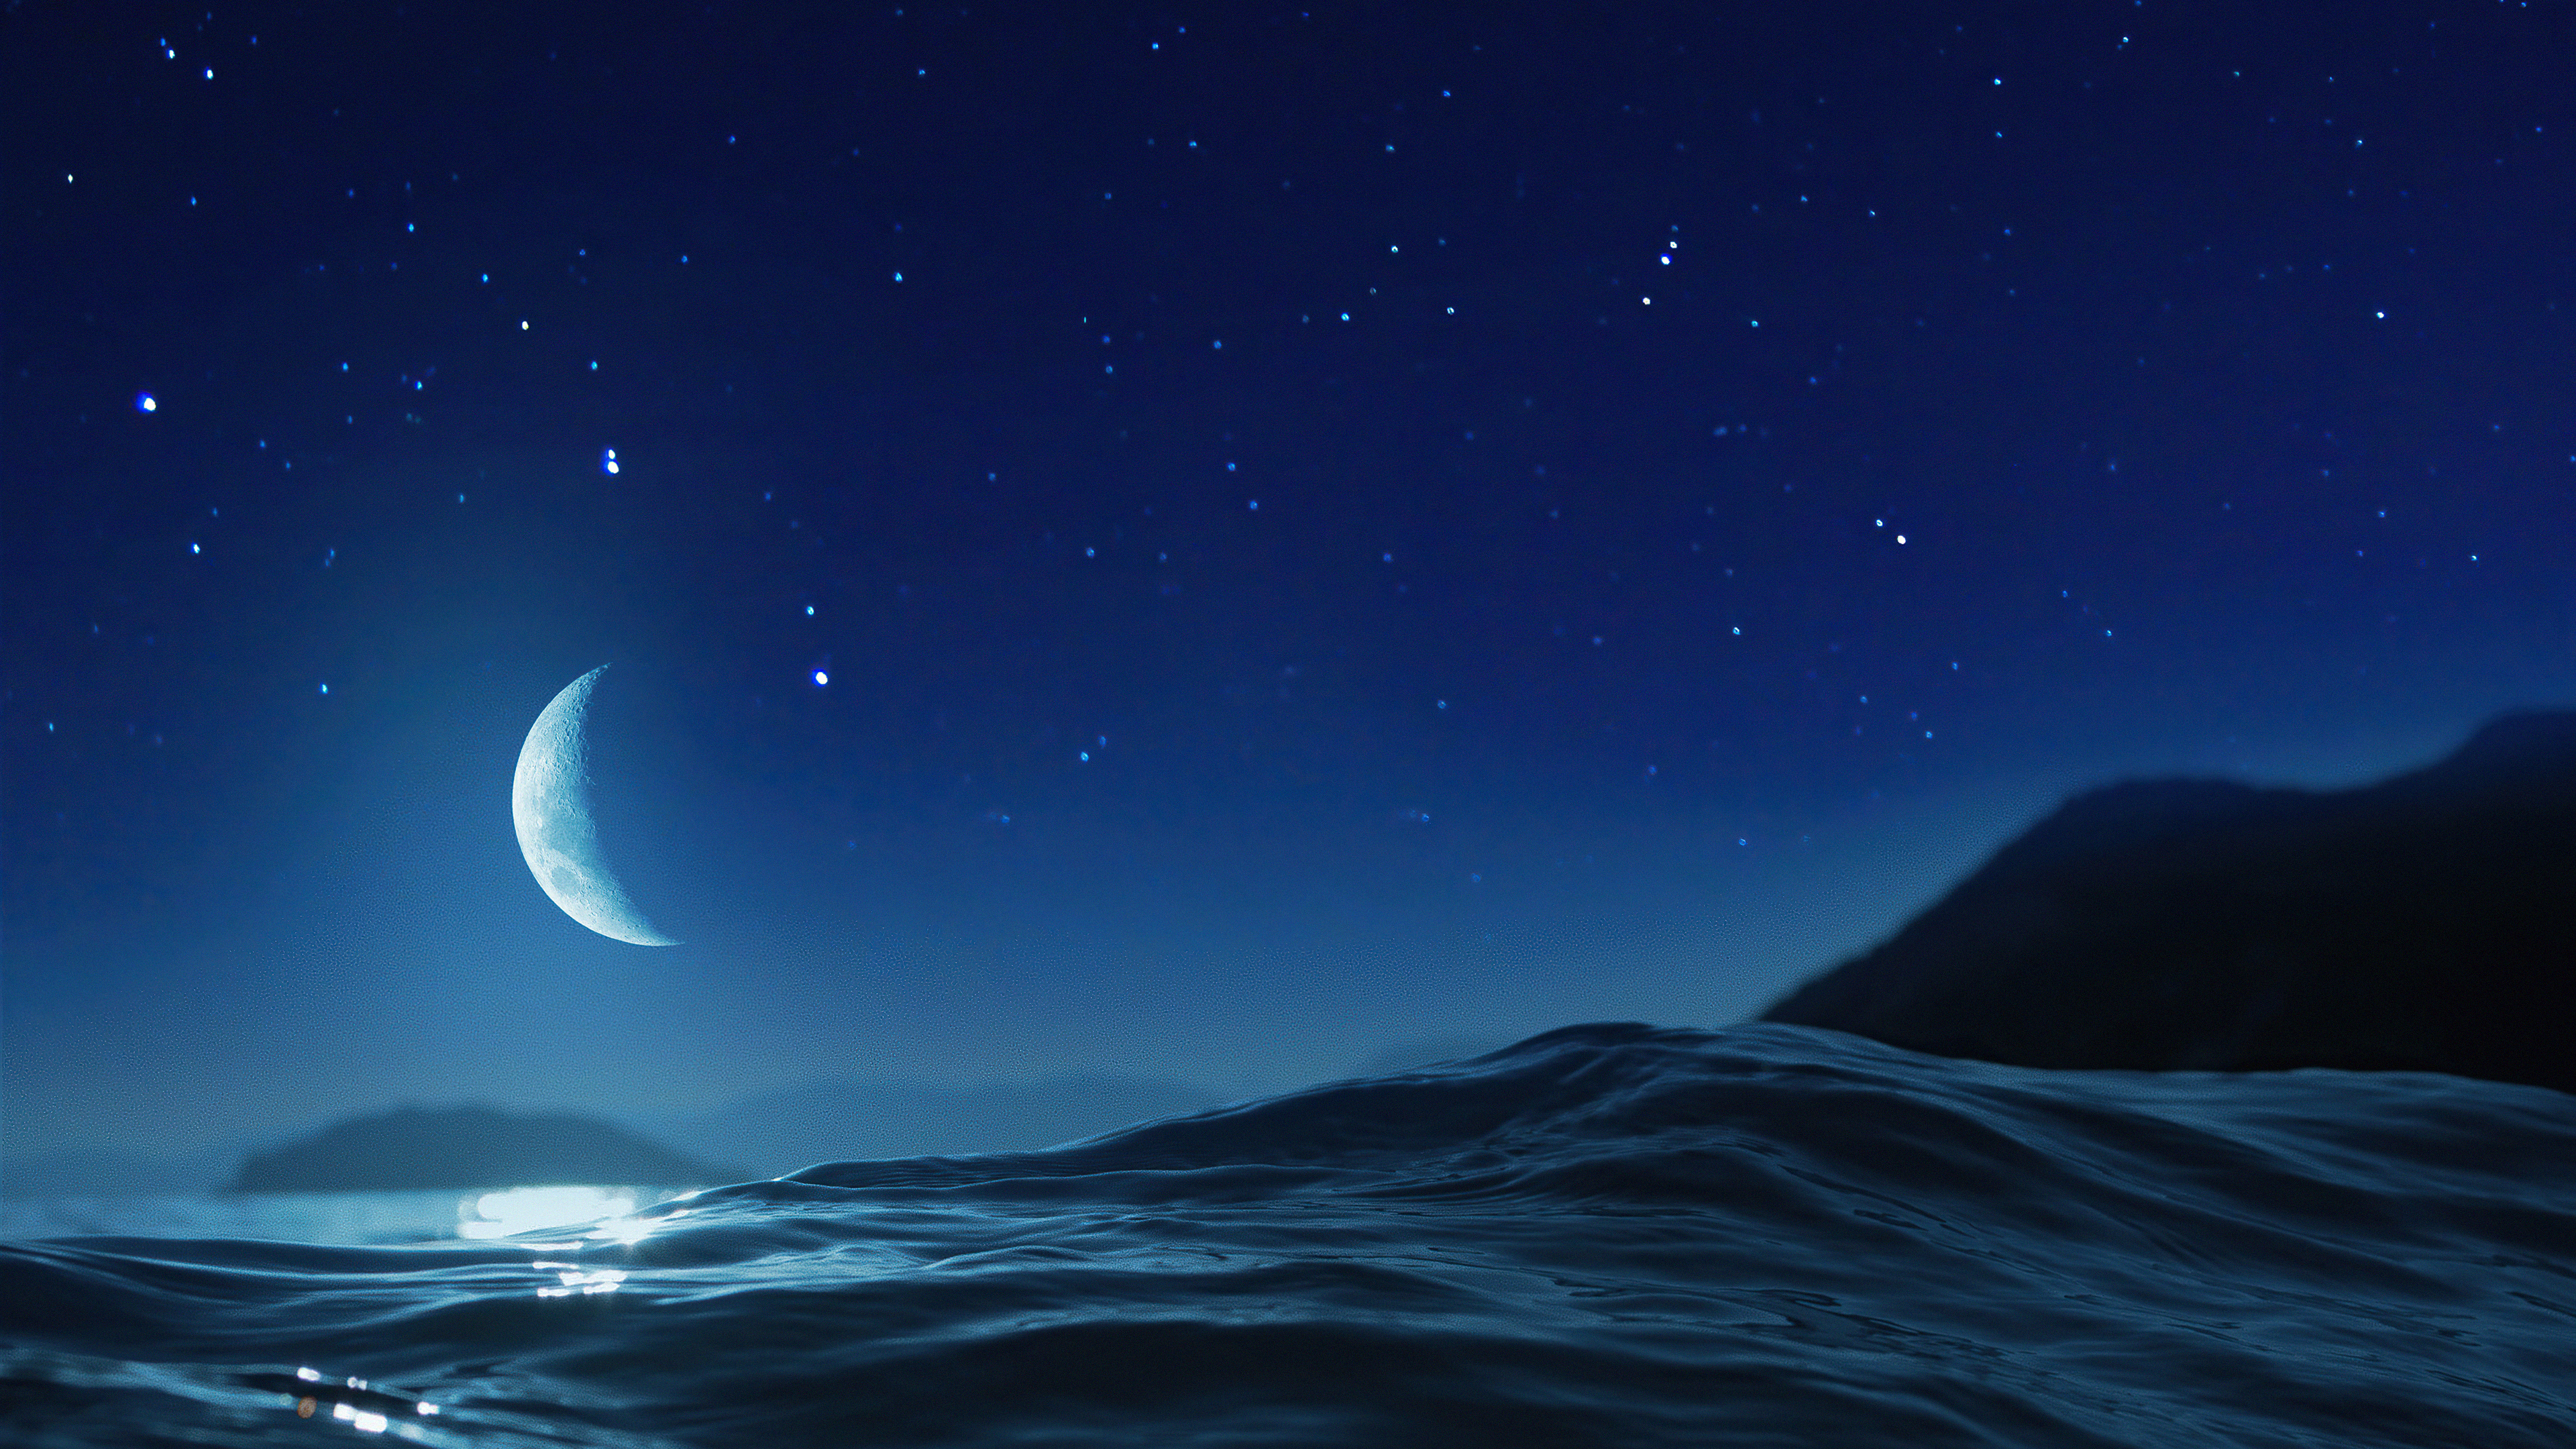 Wallpapers moon night ocean on the desktop